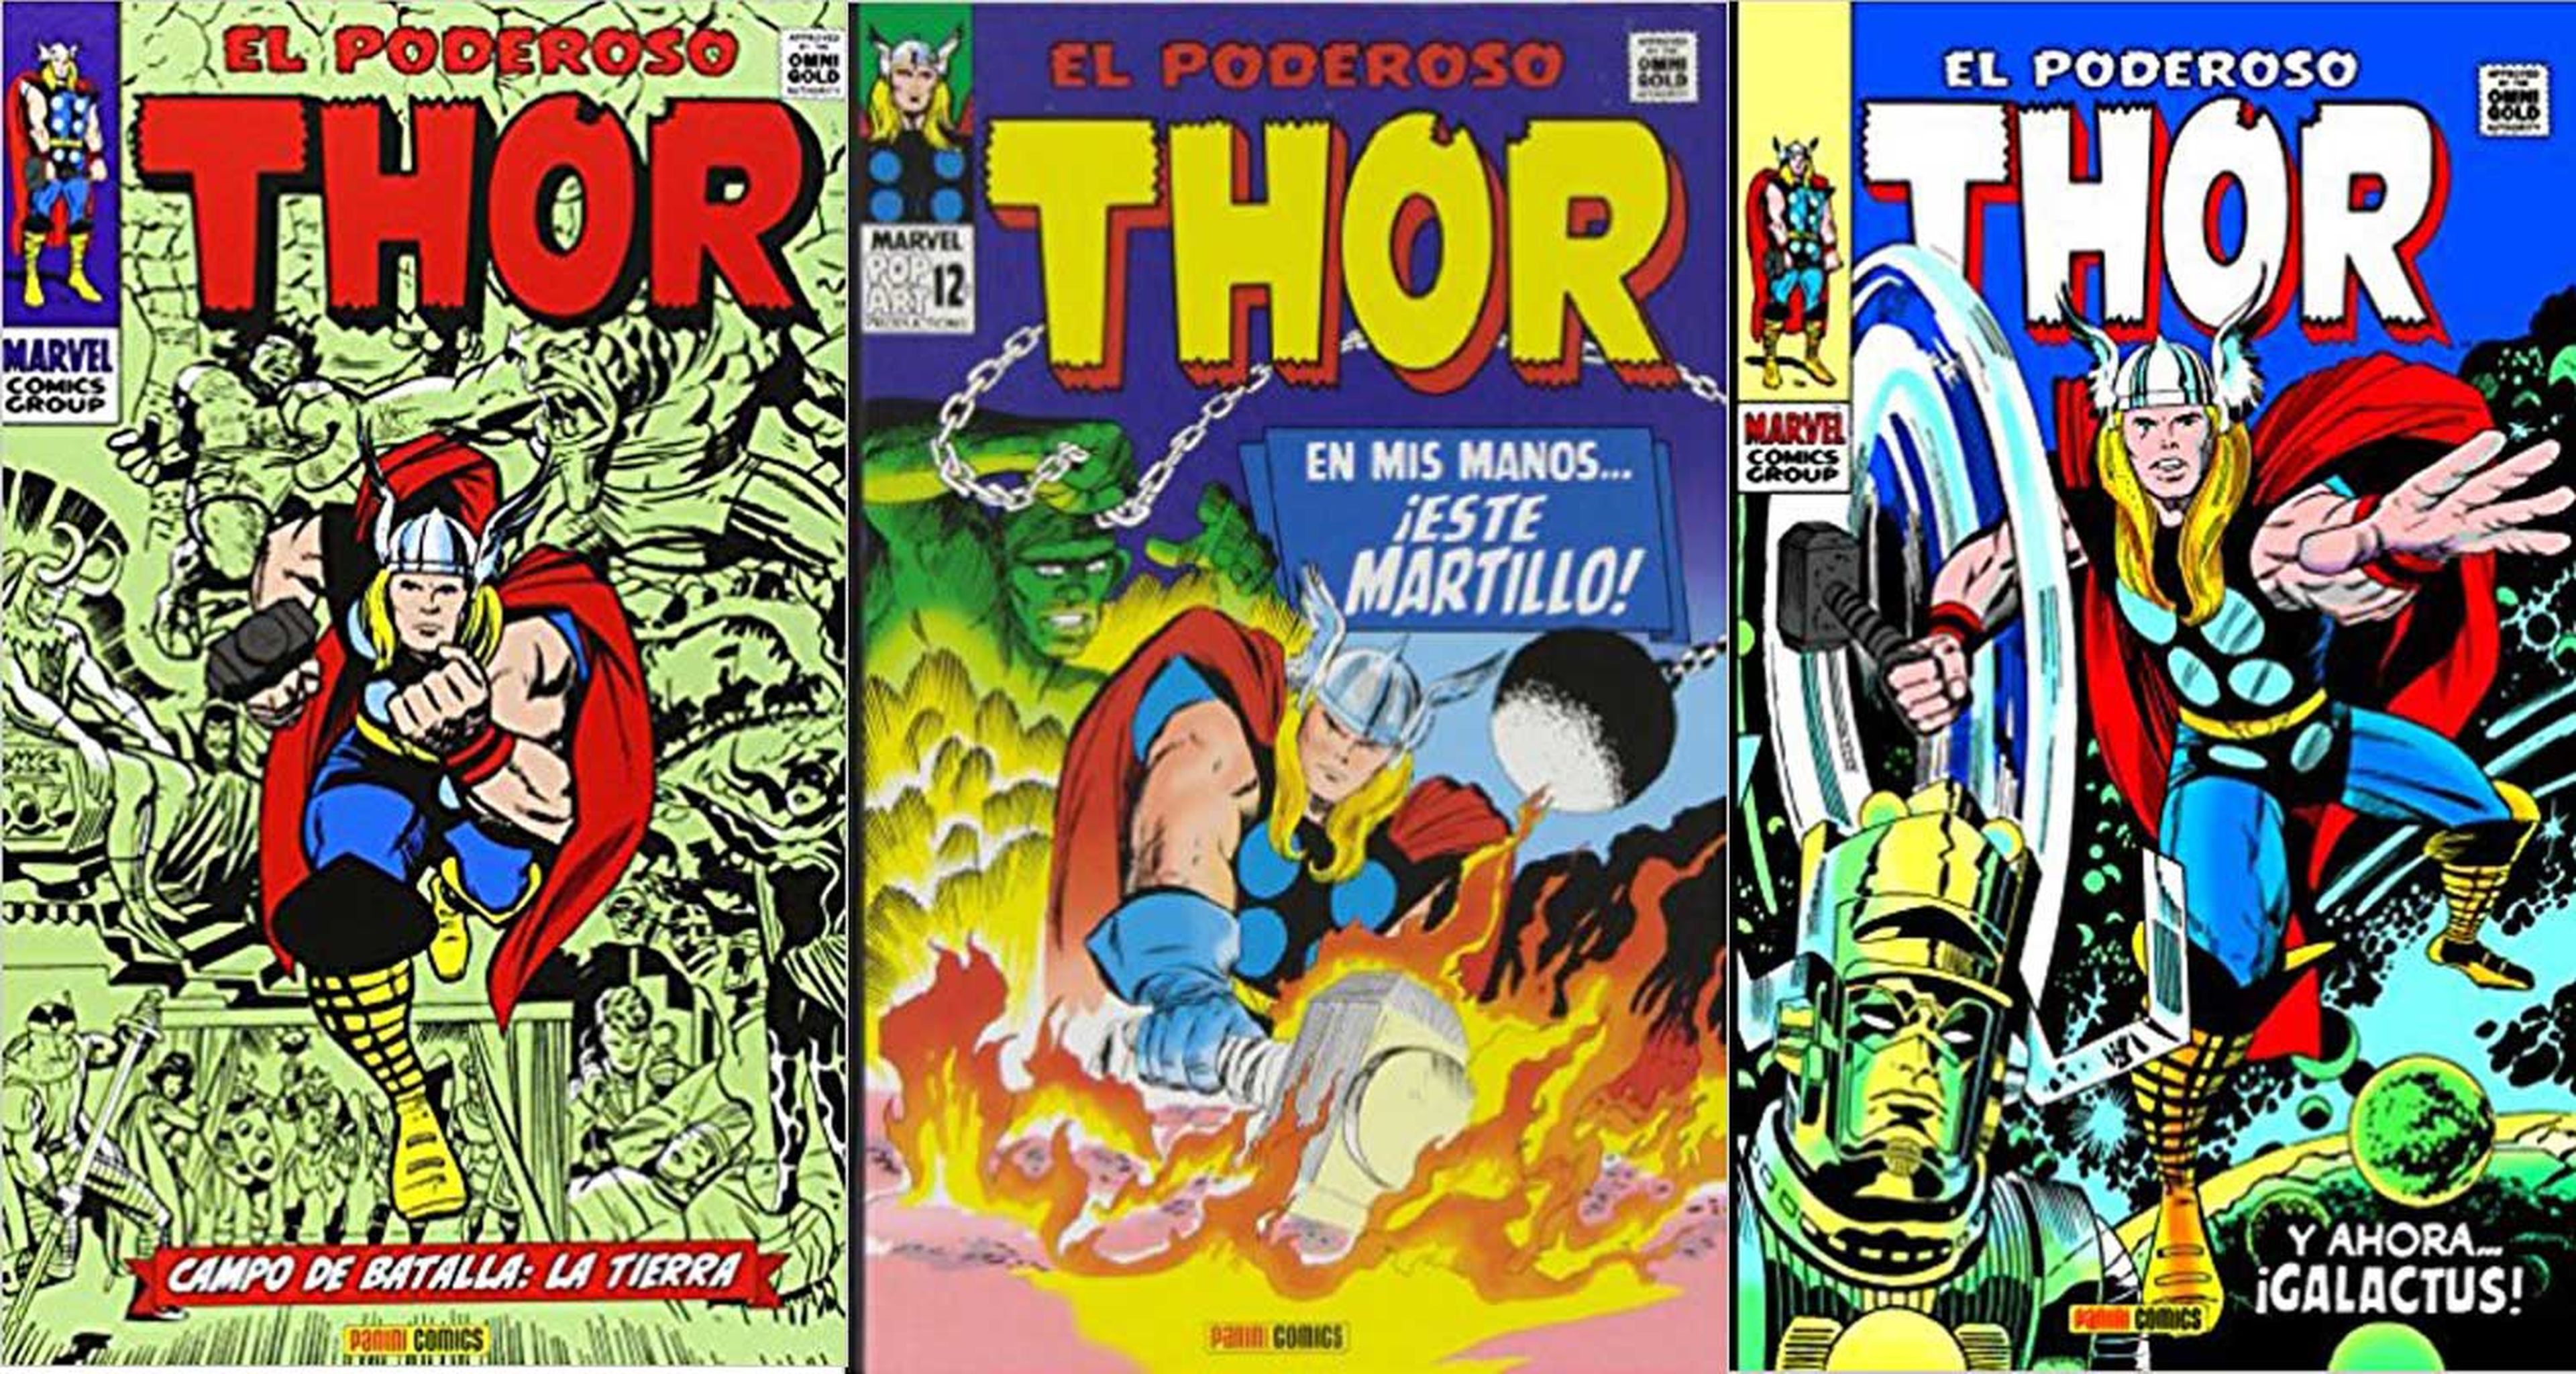 Thor, de Stan Lee y Jack Kirby